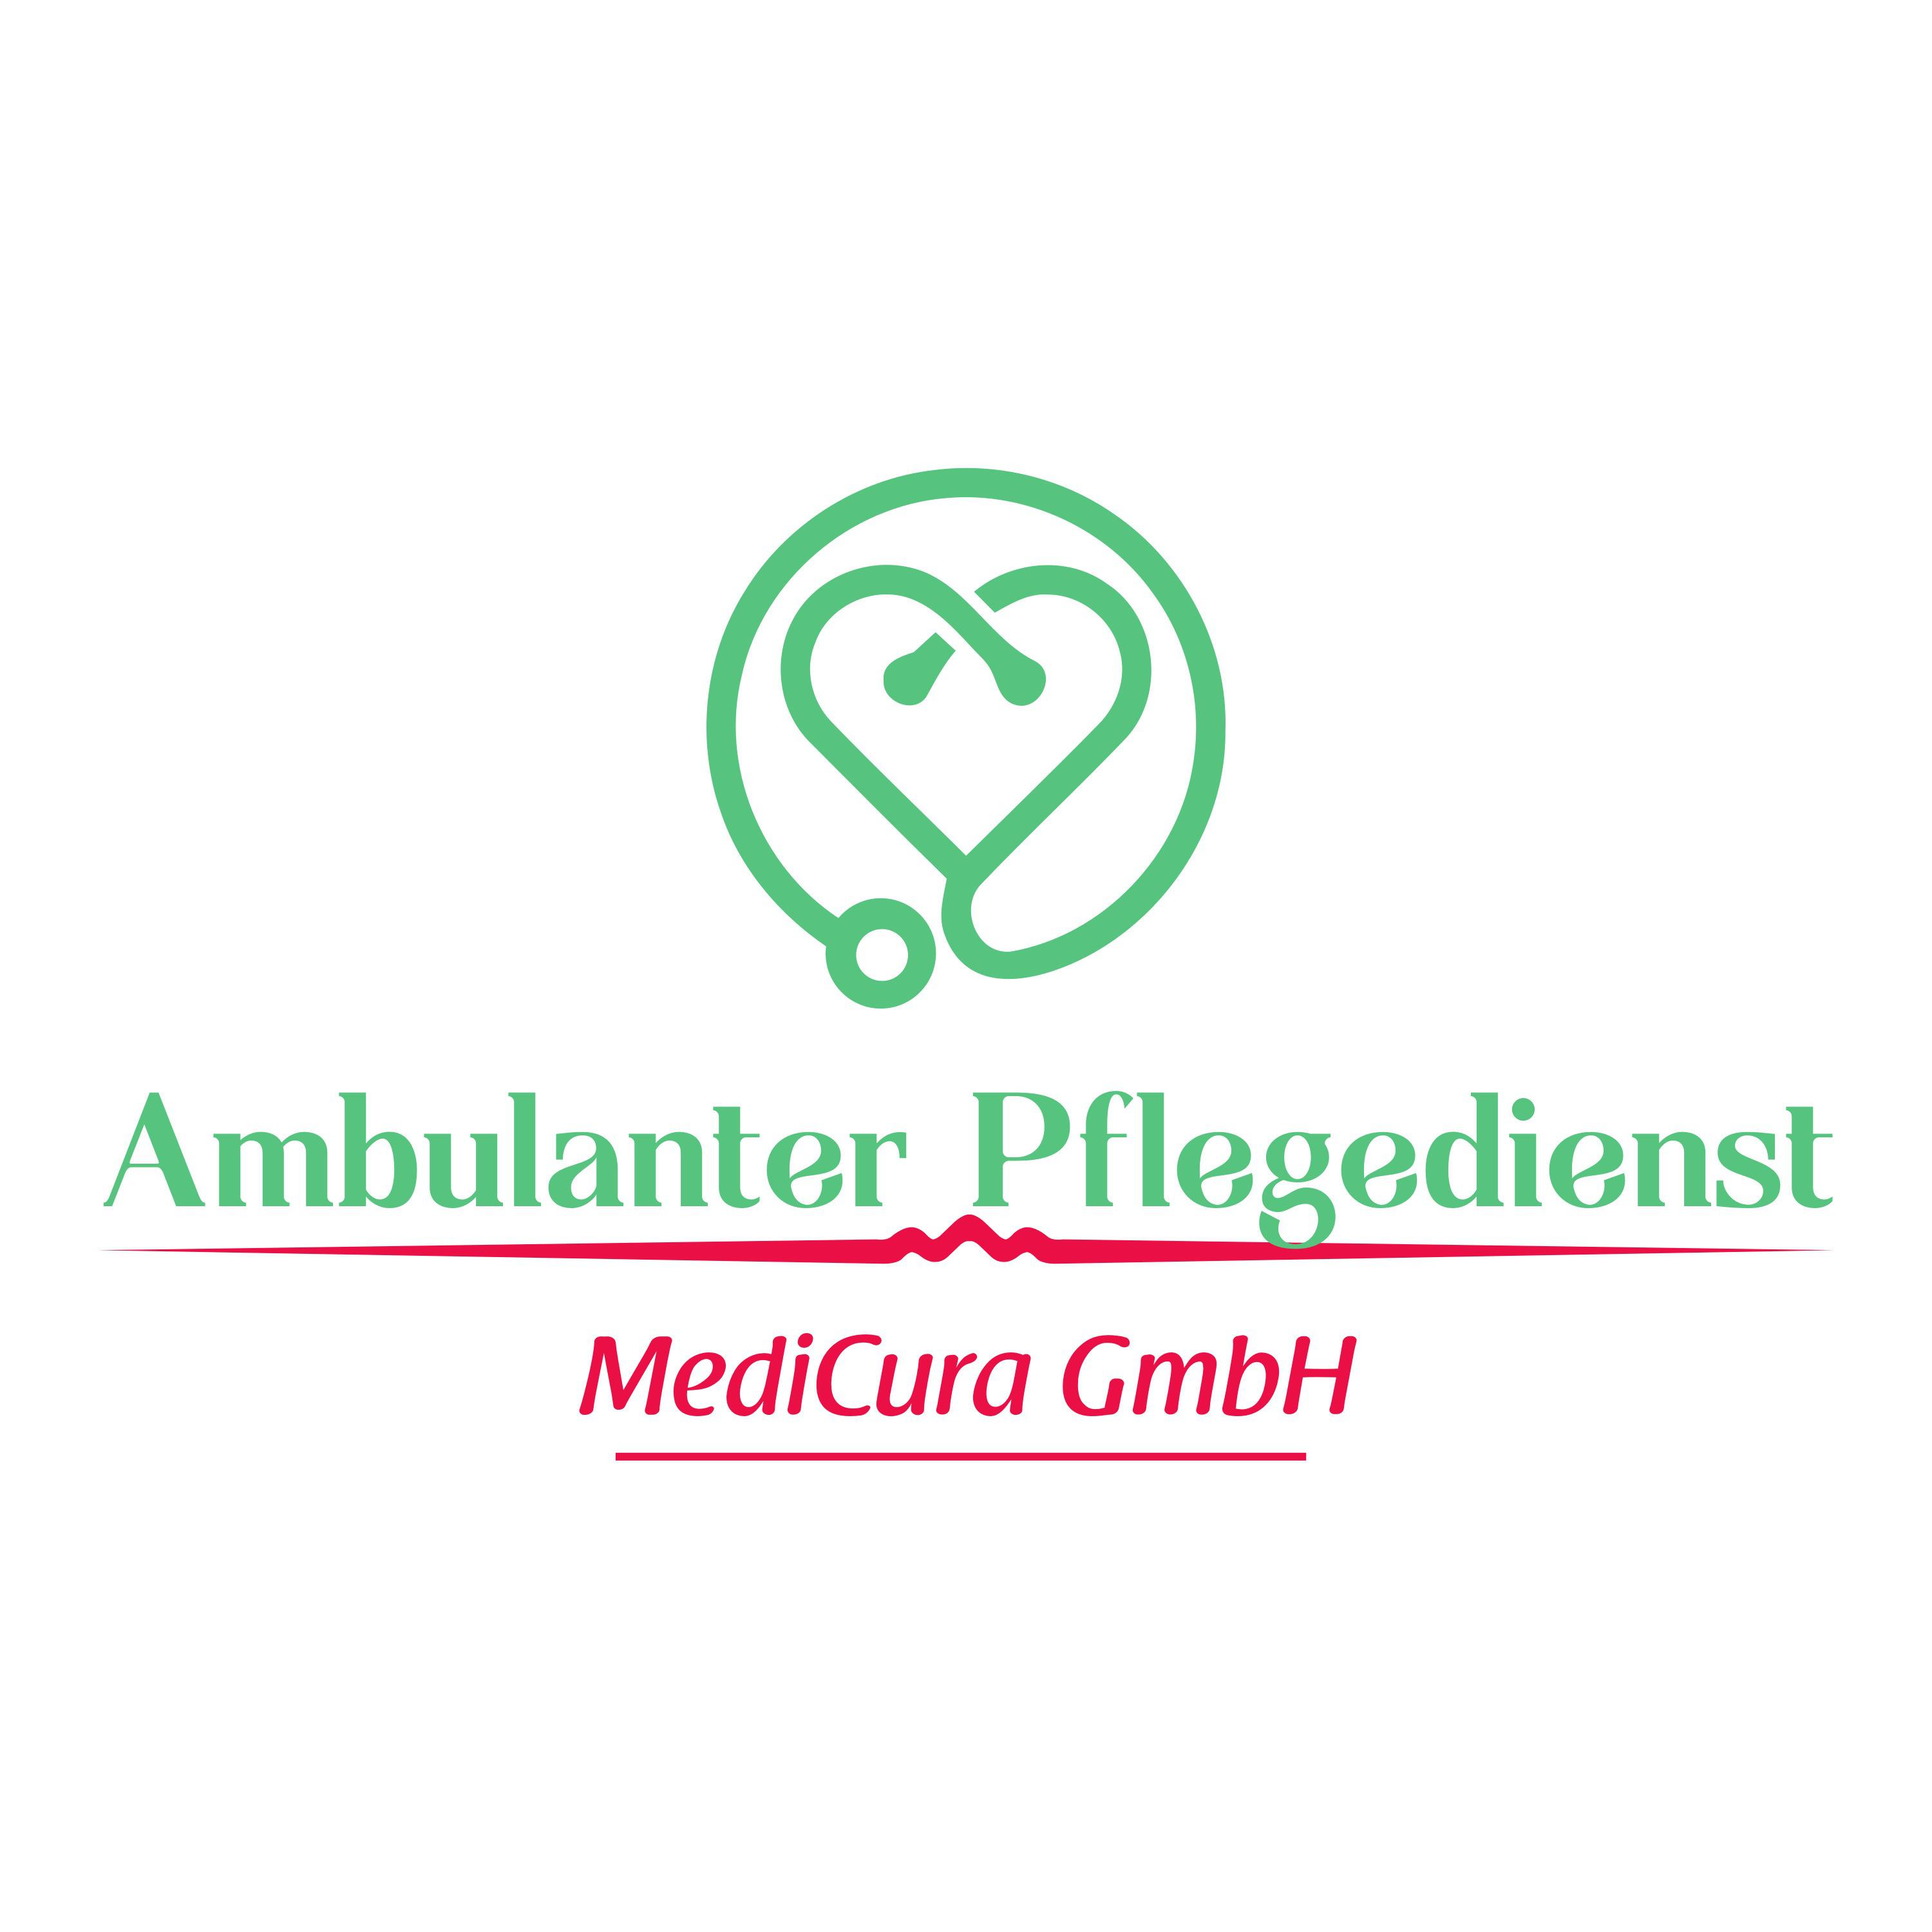 Ambulanter Pflegedienst MediCura GmbH in Essen - Logo